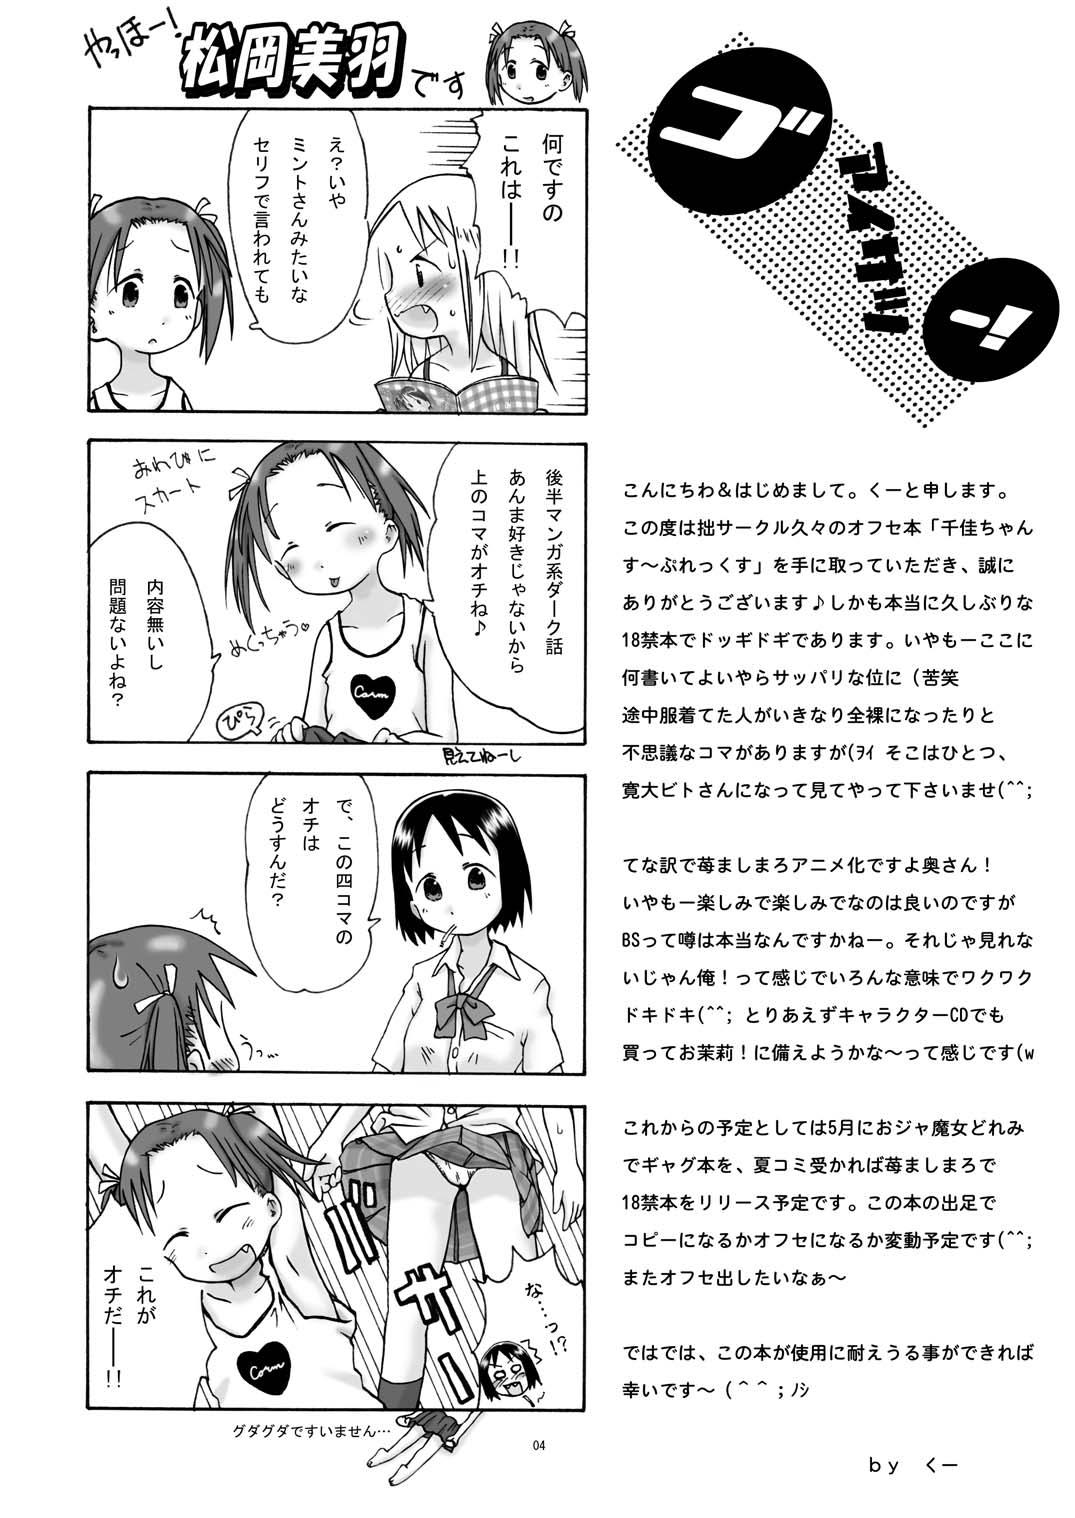 Her Chika-chan Suplex - Ichigo mashimaro Housewife - Page 4